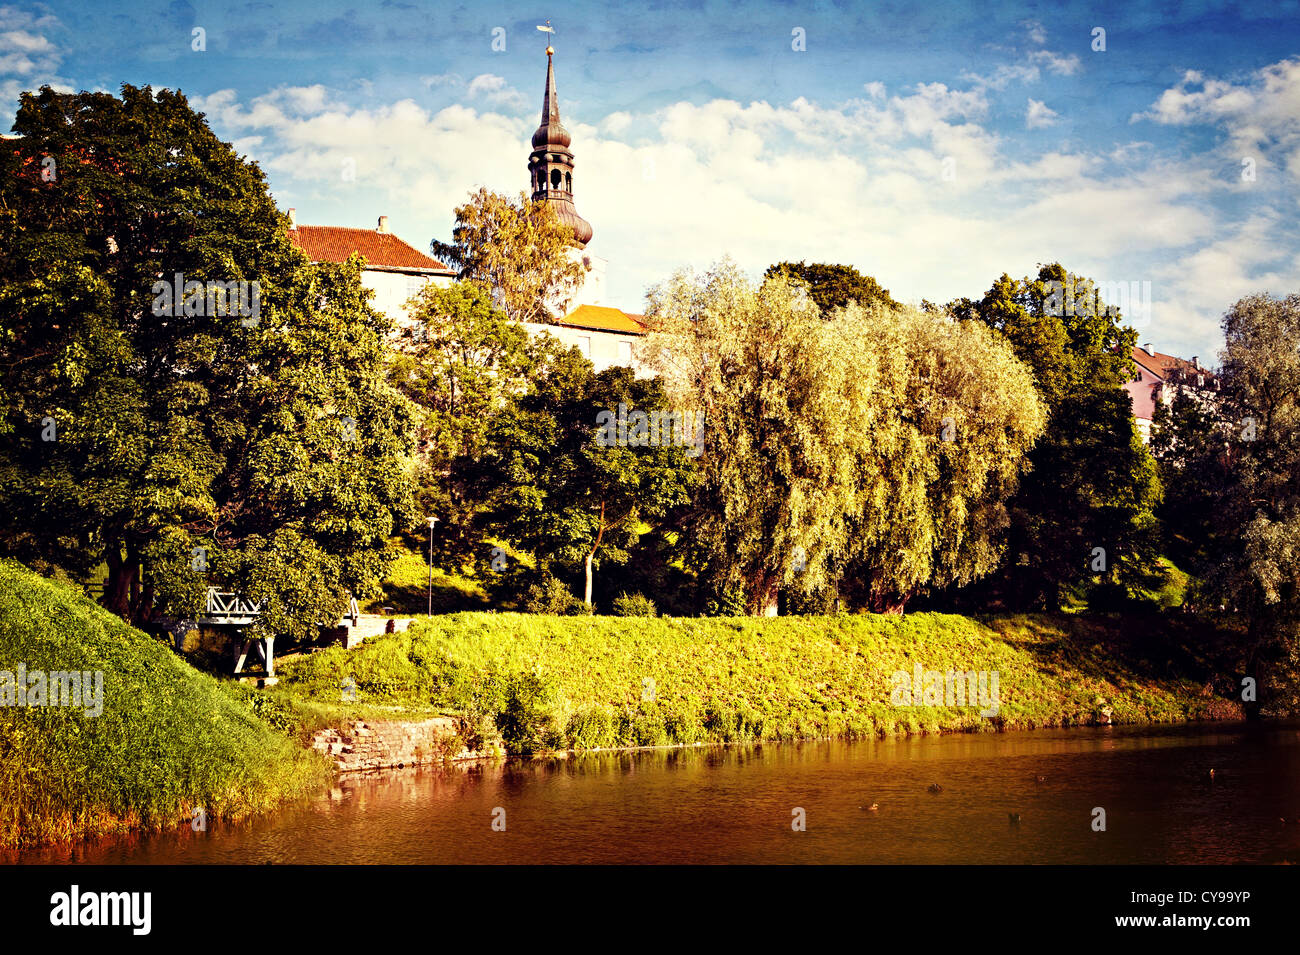 In stile retrò cartolina del parco con laghetto nella vecchia città europea Foto Stock